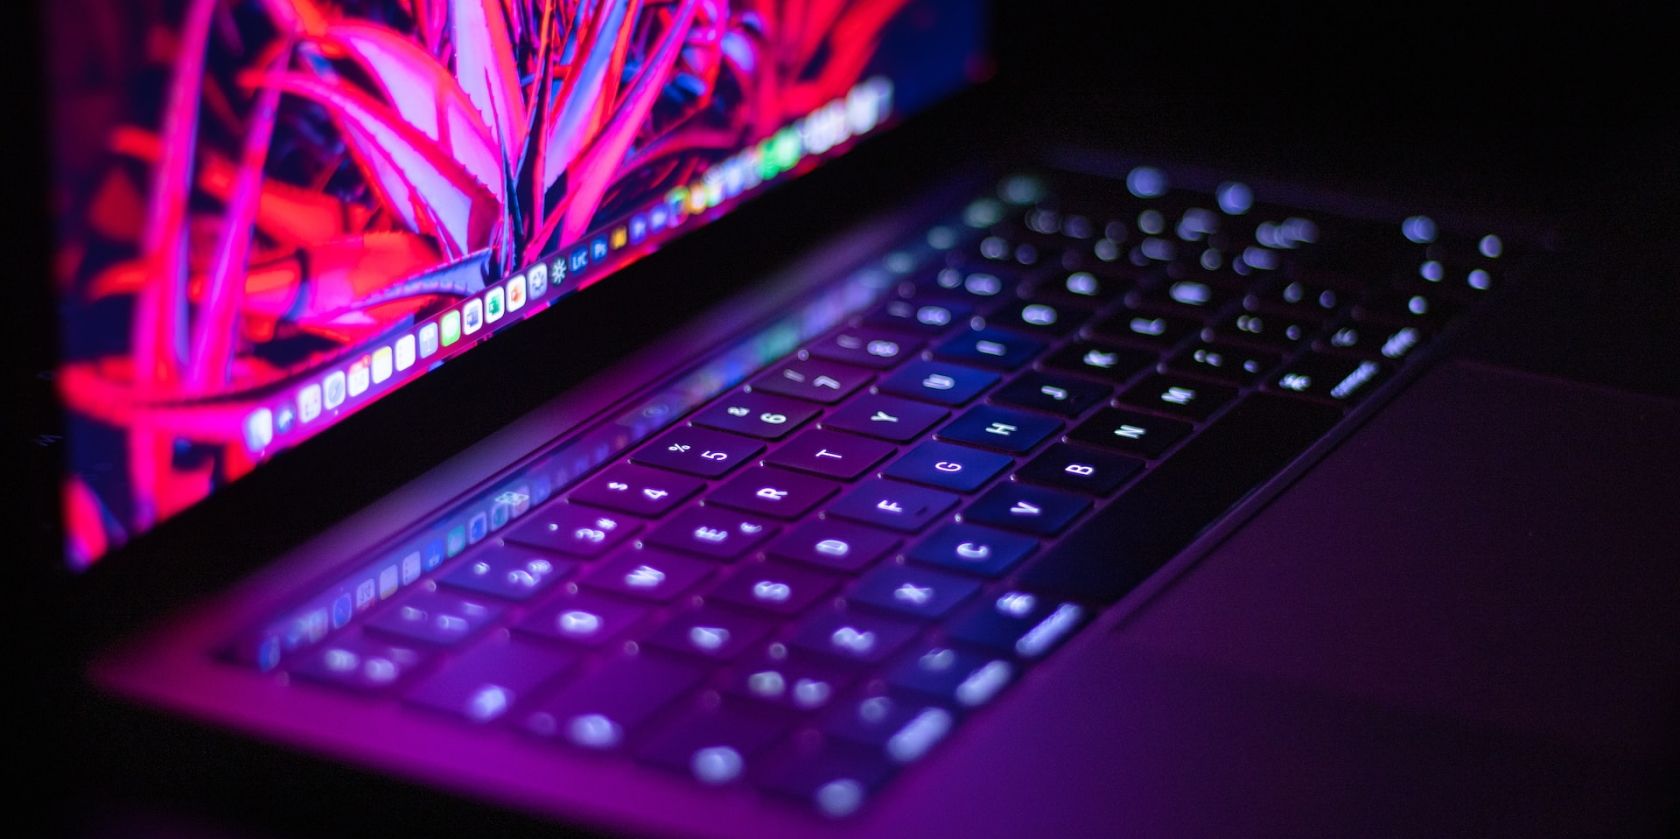 MacBook in the dark